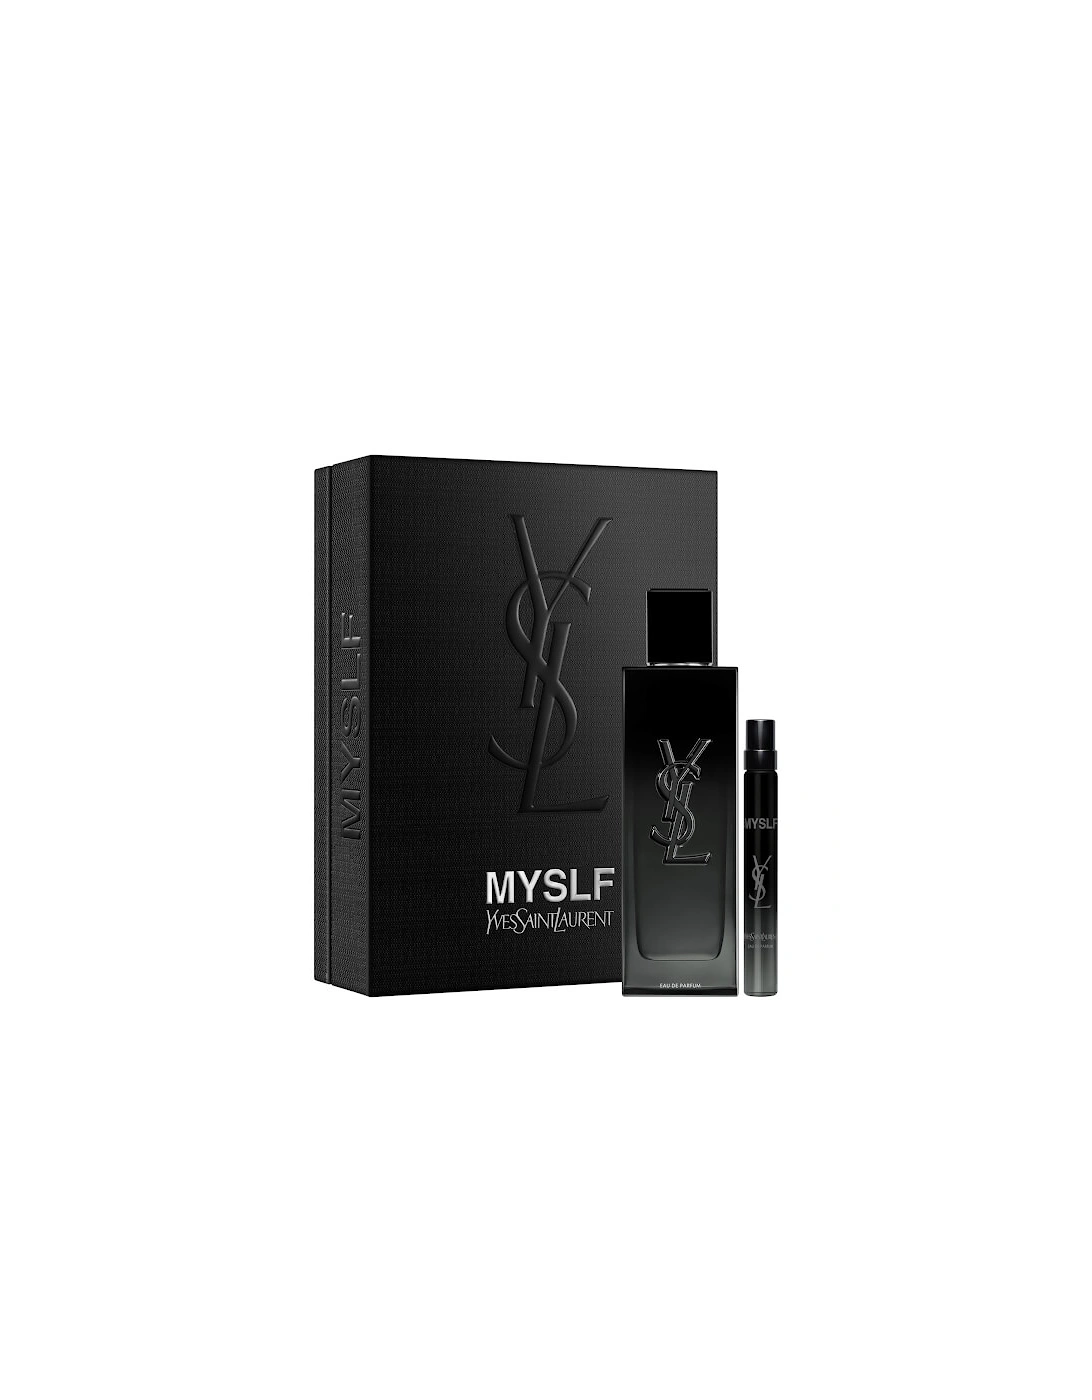 Yves Saint Laurent MYSLF 100ml Eau de Parfum and 10ml Trial Size Gift Set, 2 of 1